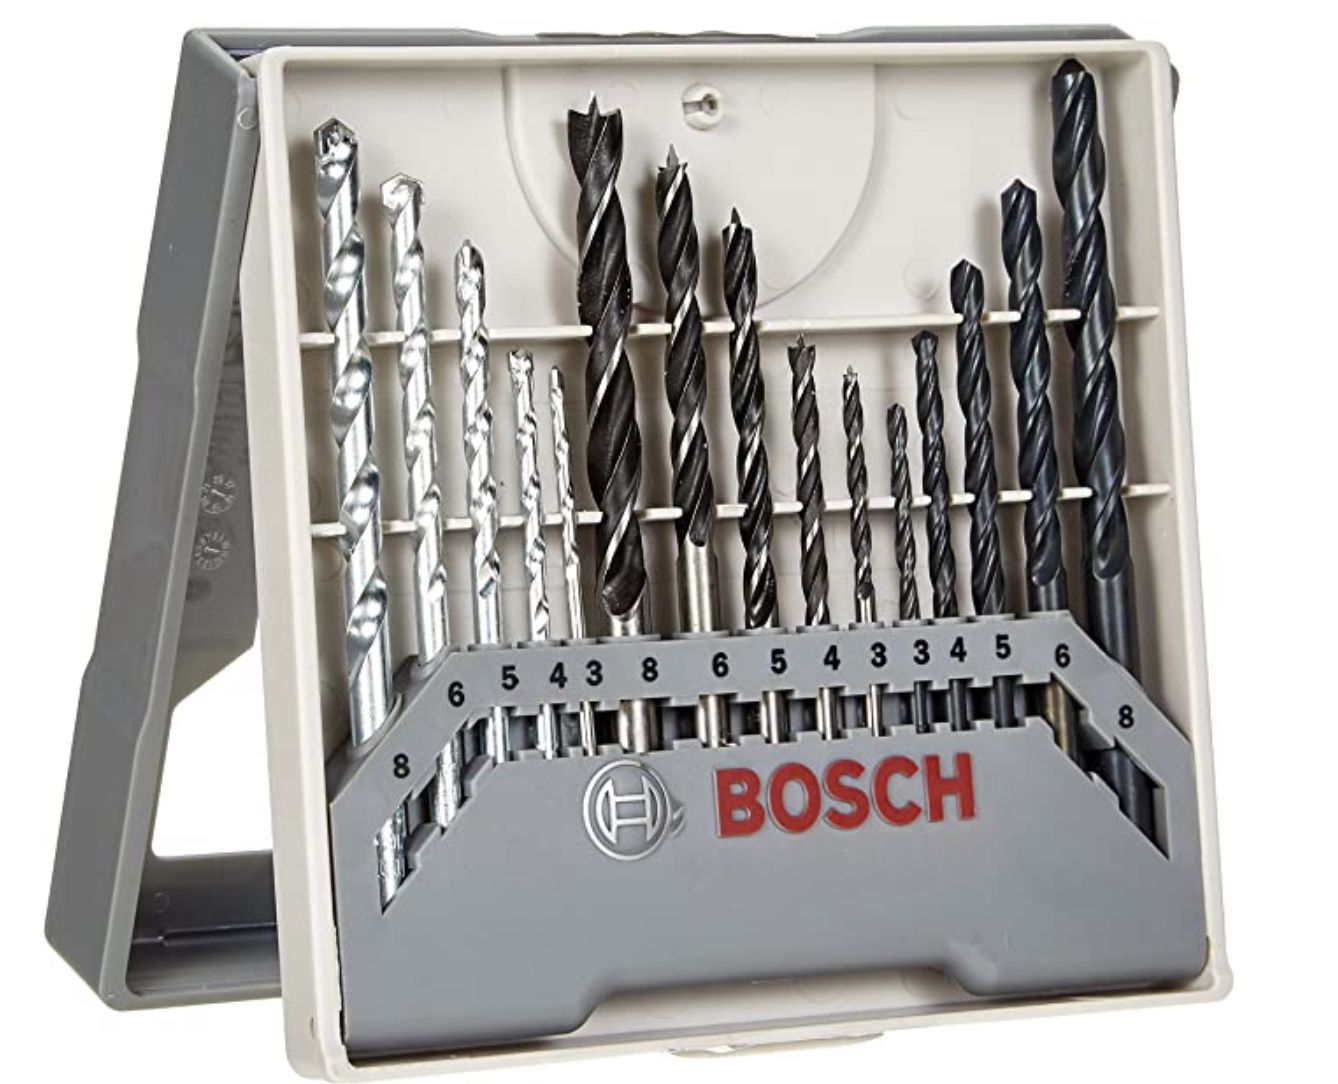 Bosch Bohrer Set gemischt 15 teilig (Metall, Holz, Stein) für 13,18€ (statt 15€)   Prime